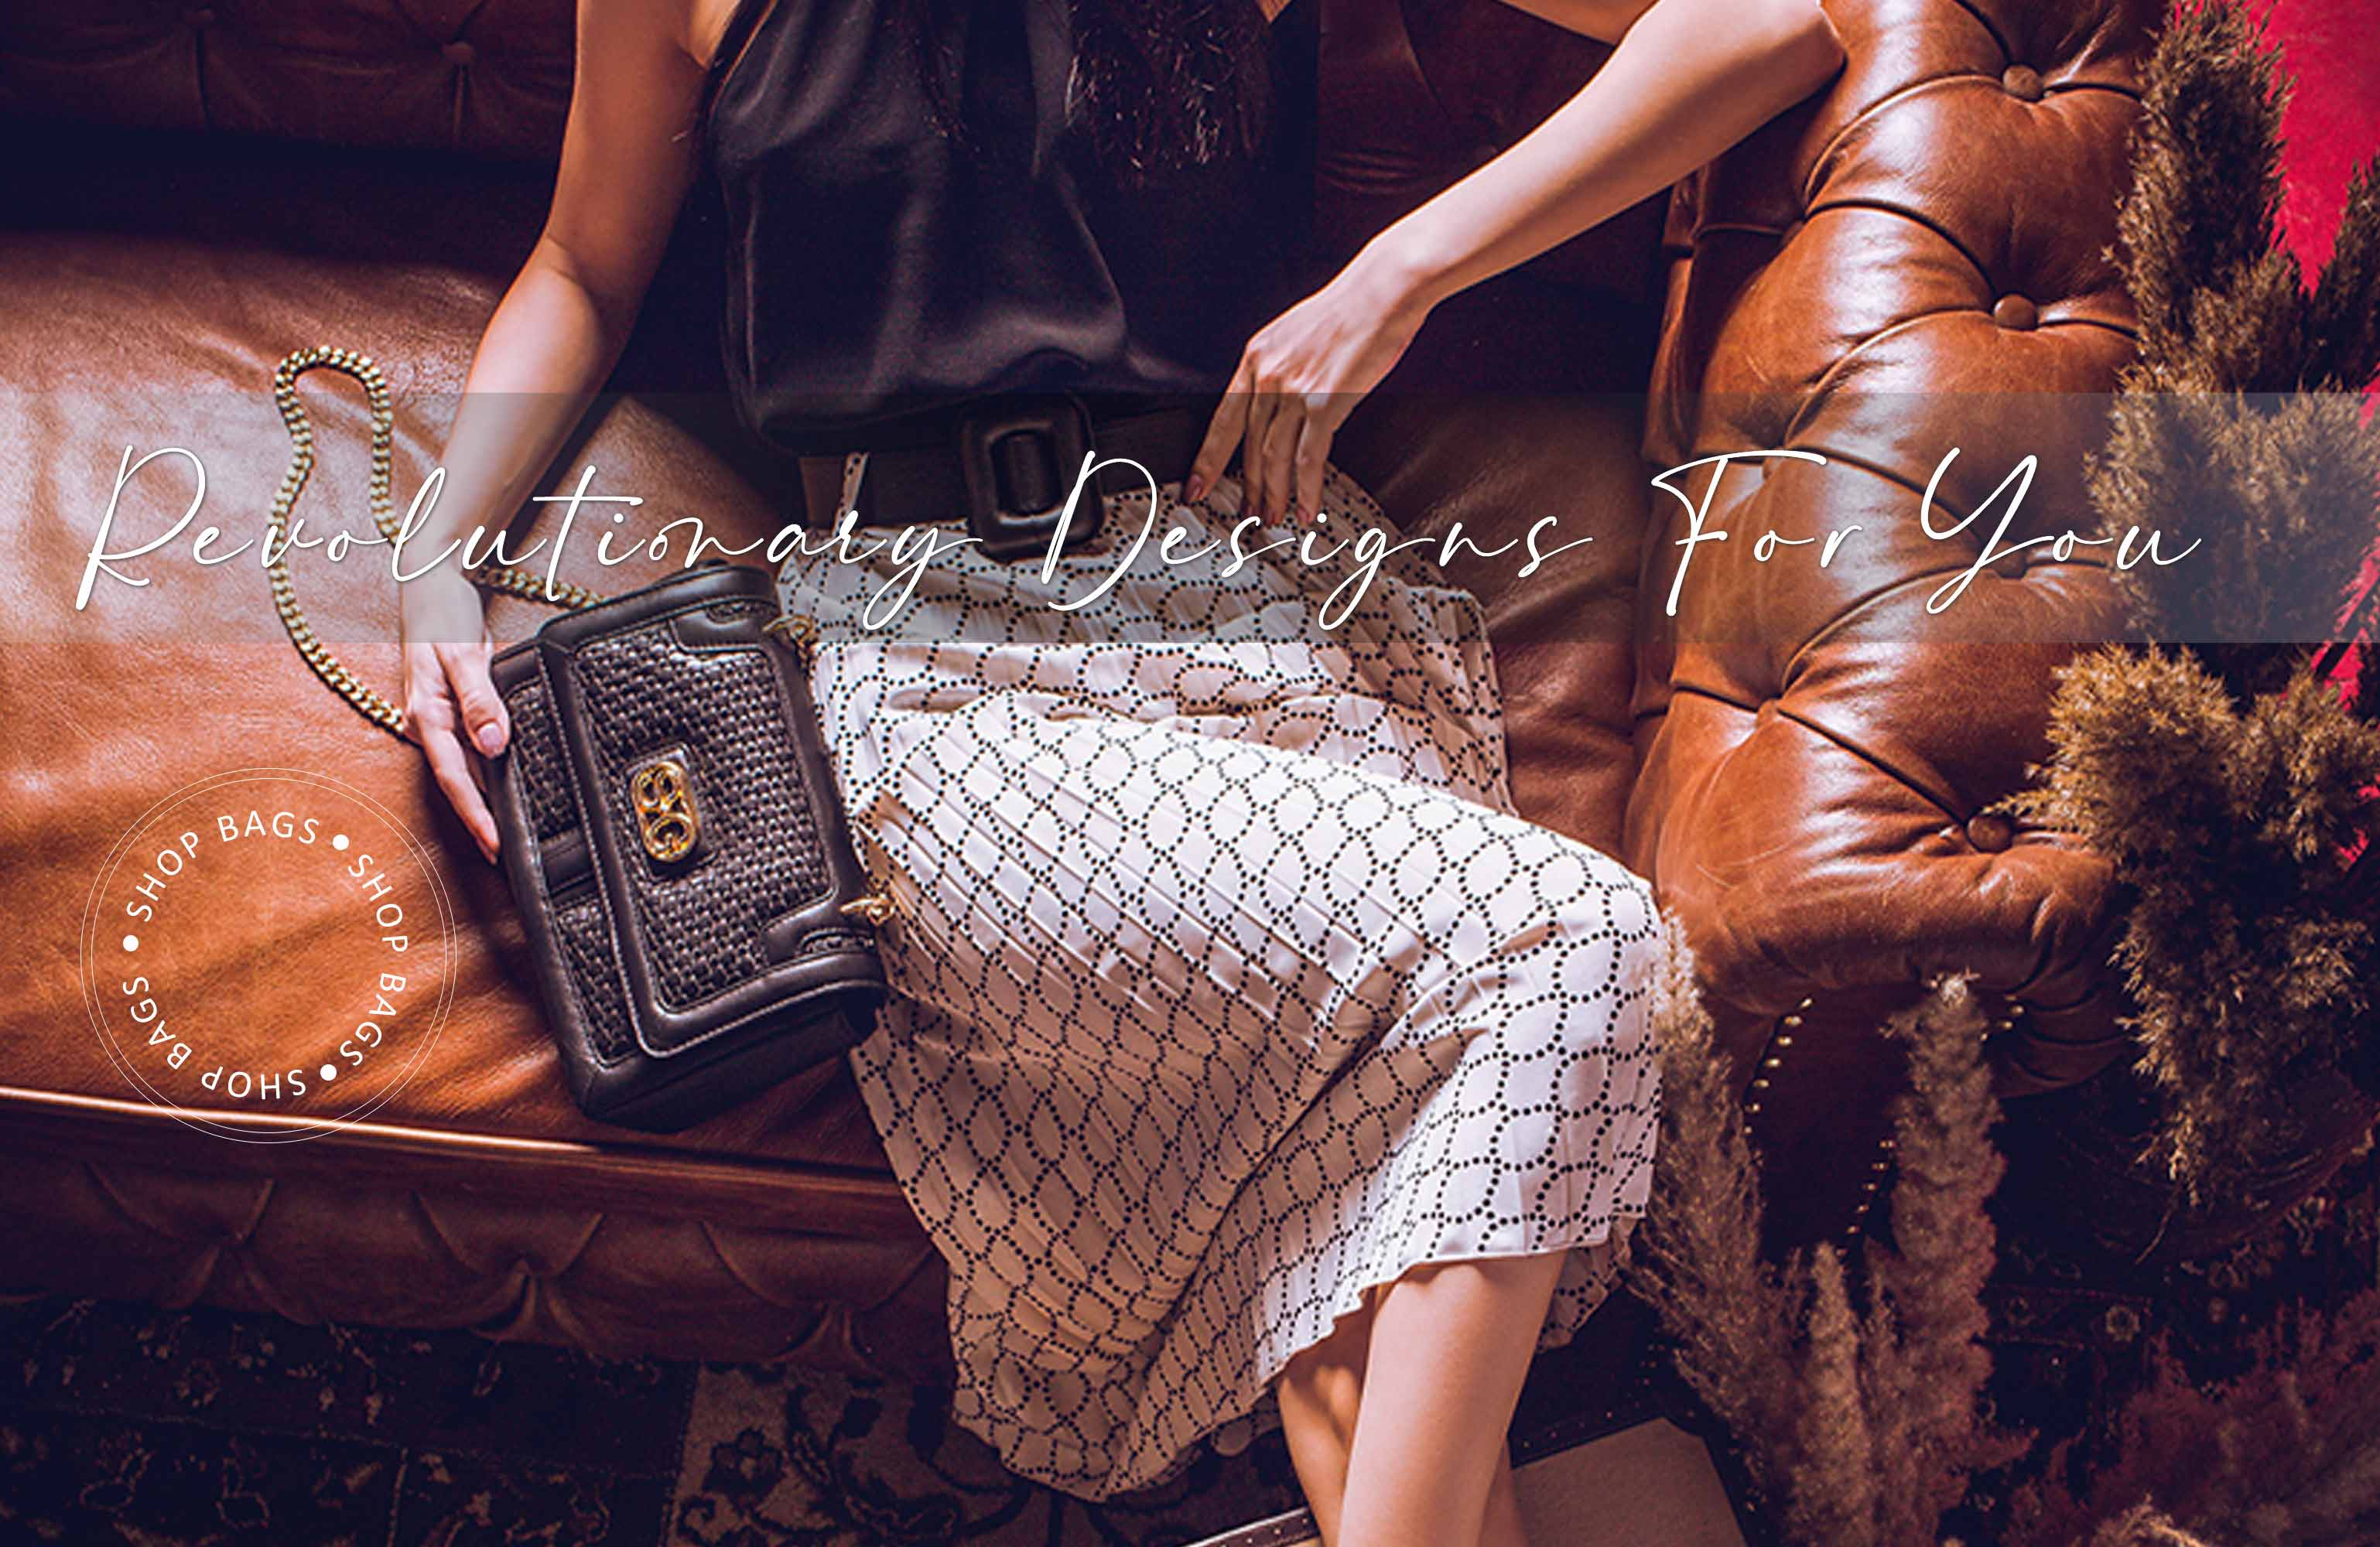 Chanel Beige And Black Large Bowler Handbag